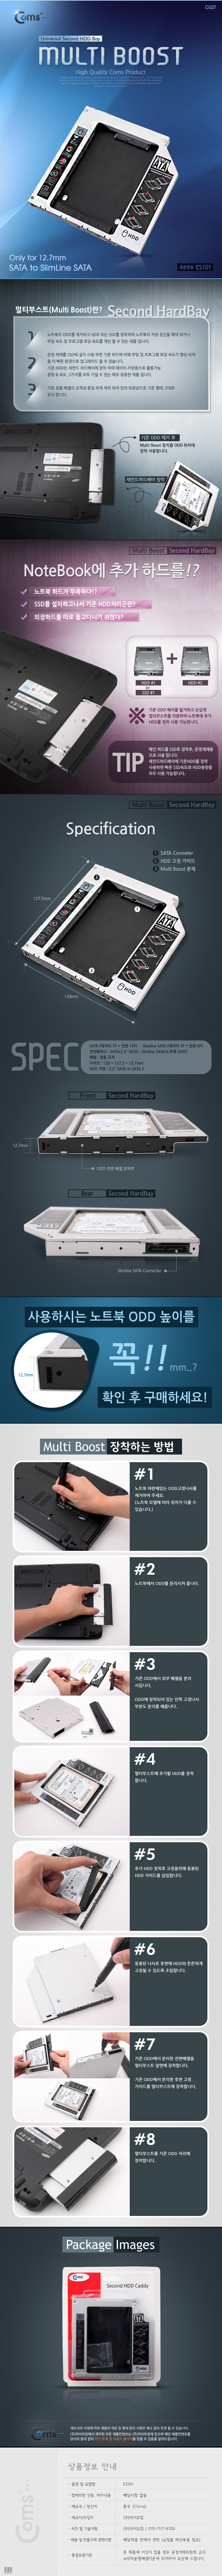 Coms 노트북용 멀티부스트. HDD SSD 추가 설치용(12.7